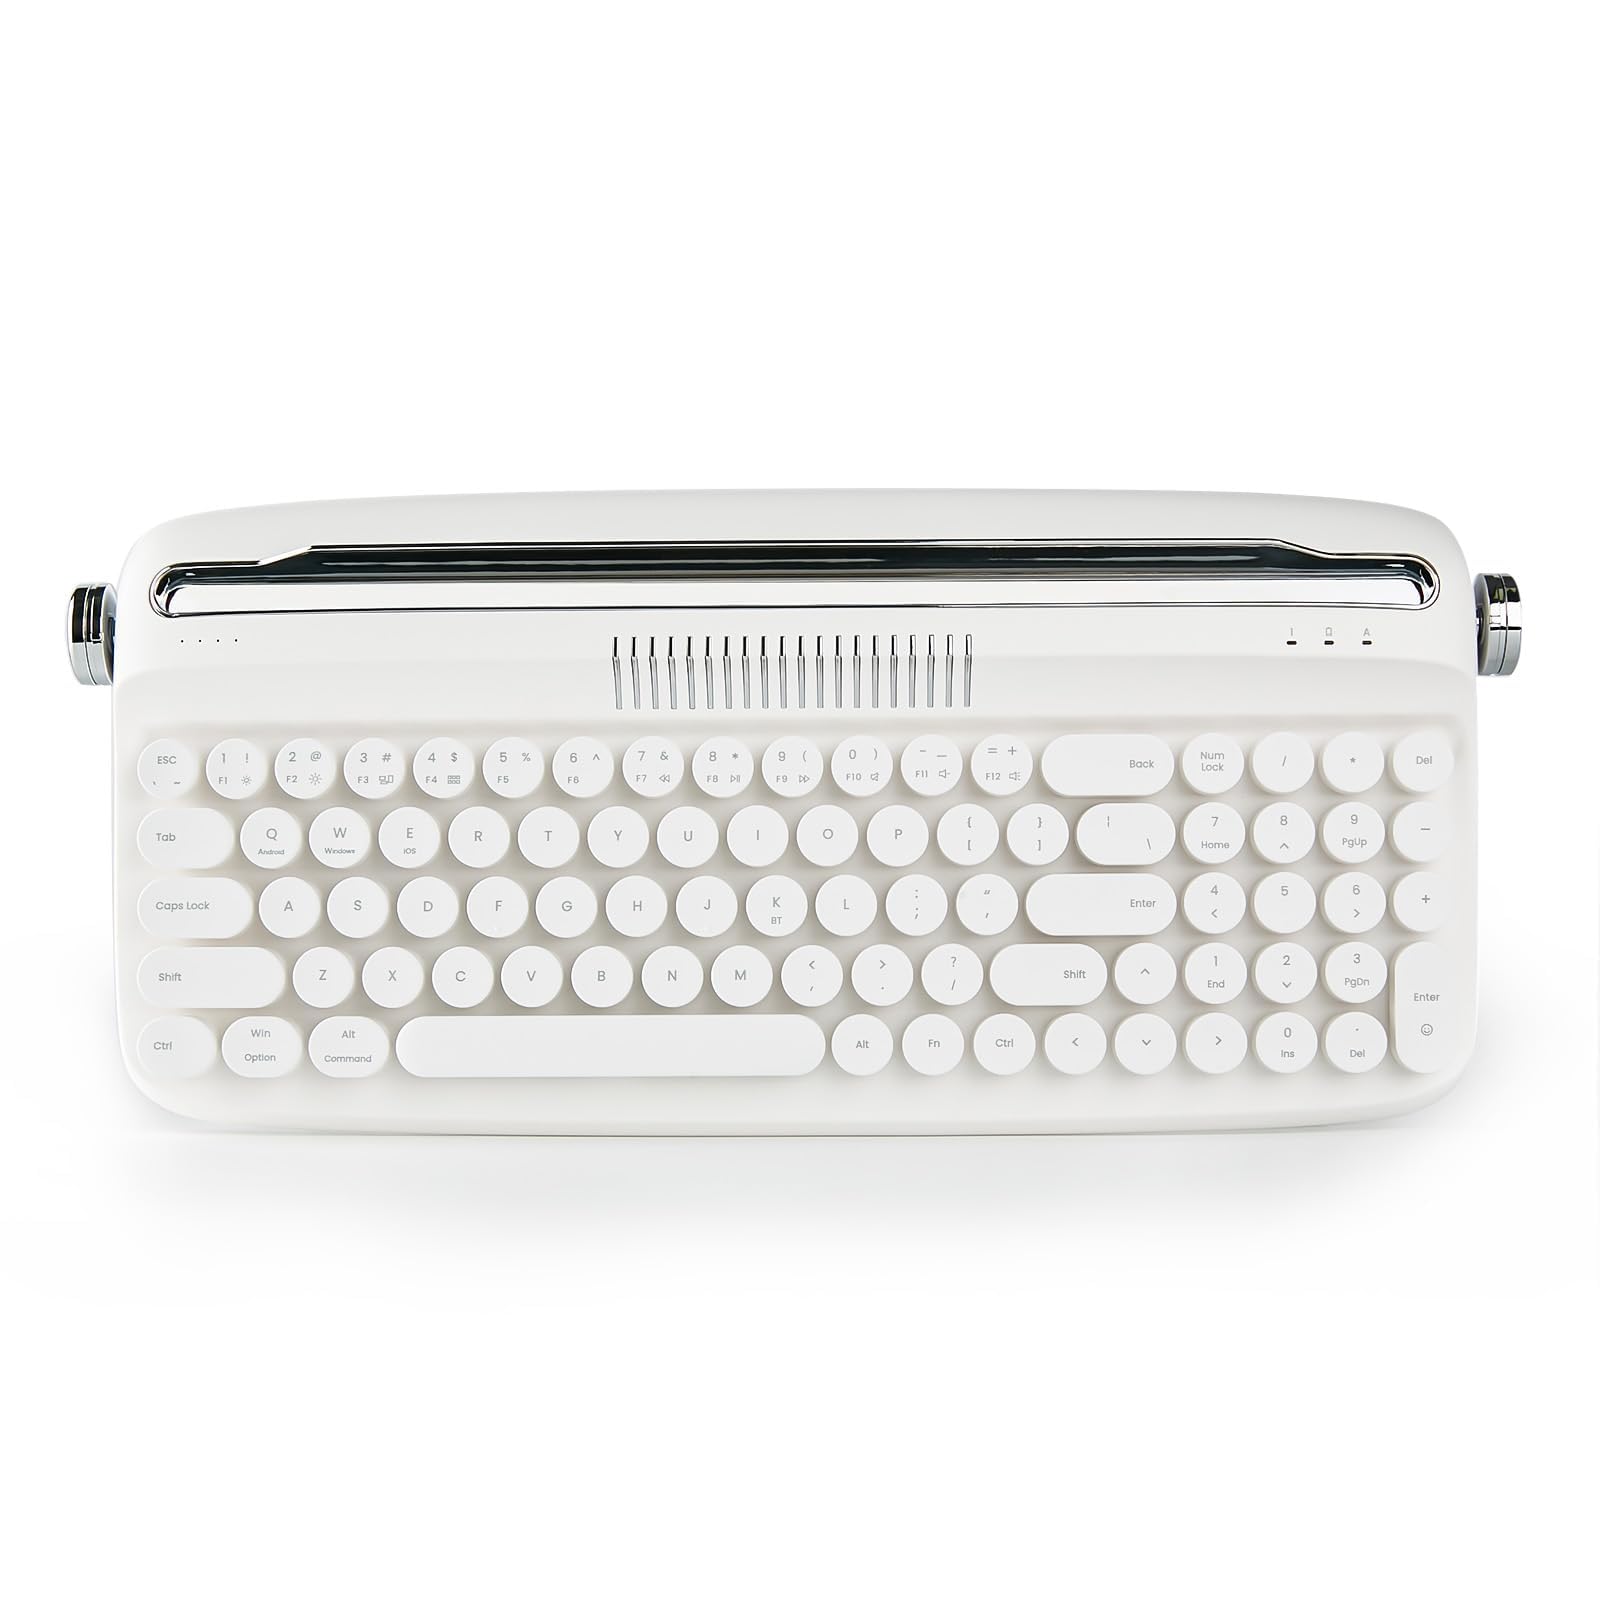 YUNZII タイプライターキーボード ワイヤレス アップグレード キーボード スタンド一体型 USB-C/Bluetoothキーボード かわいい 丸いキーキャップ マルチデバイス対応 ノブコントロール Win/Mac対応(B309, ホワイト)